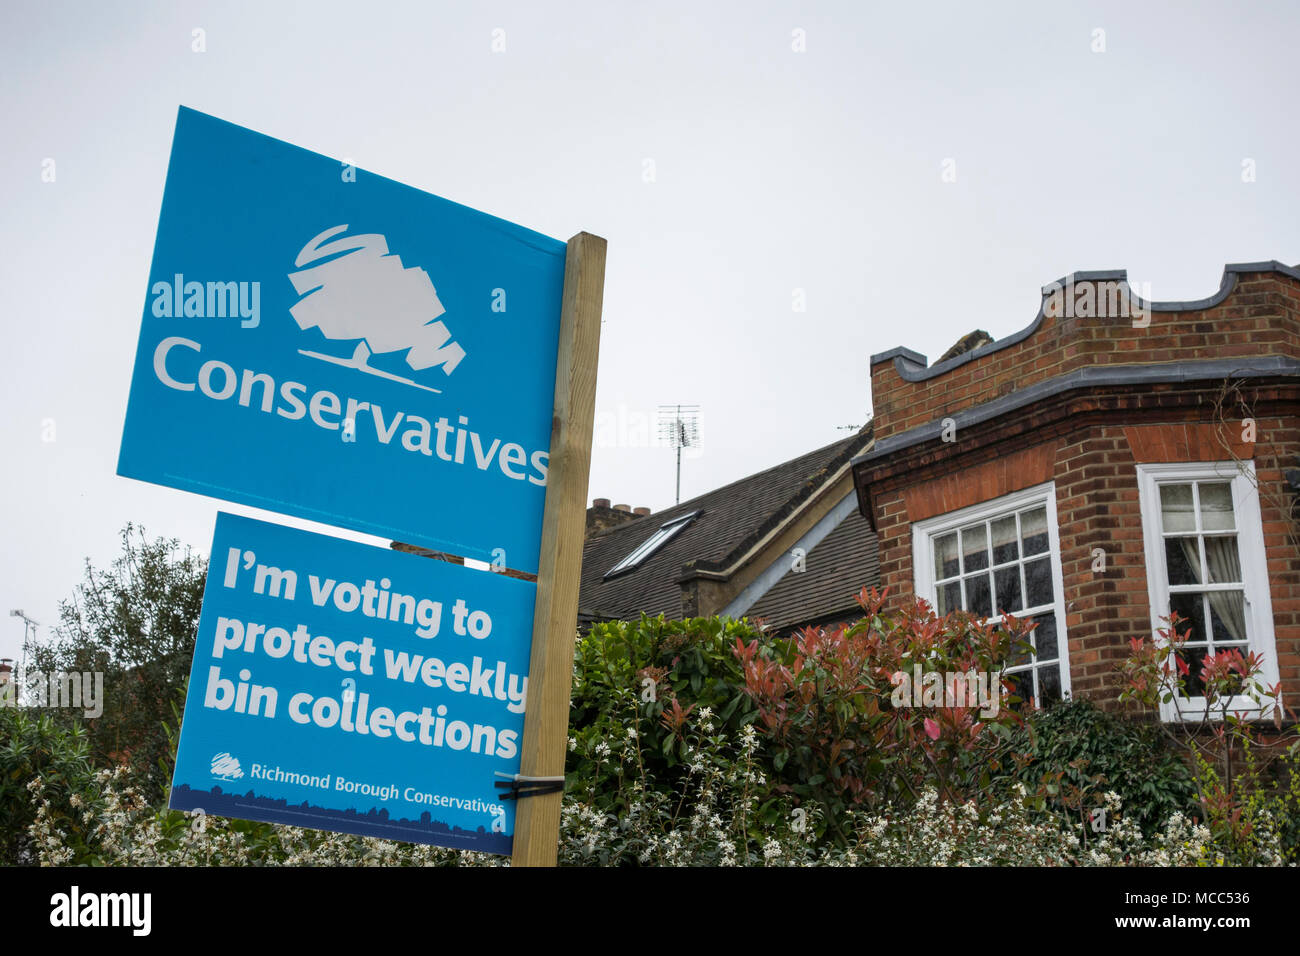 Estoy trabajando para proteger las colecciones de depósito semanal - cartel electoral local conservadora fuera de una casa en el sudoeste de Londres, Reino Unido Foto de stock